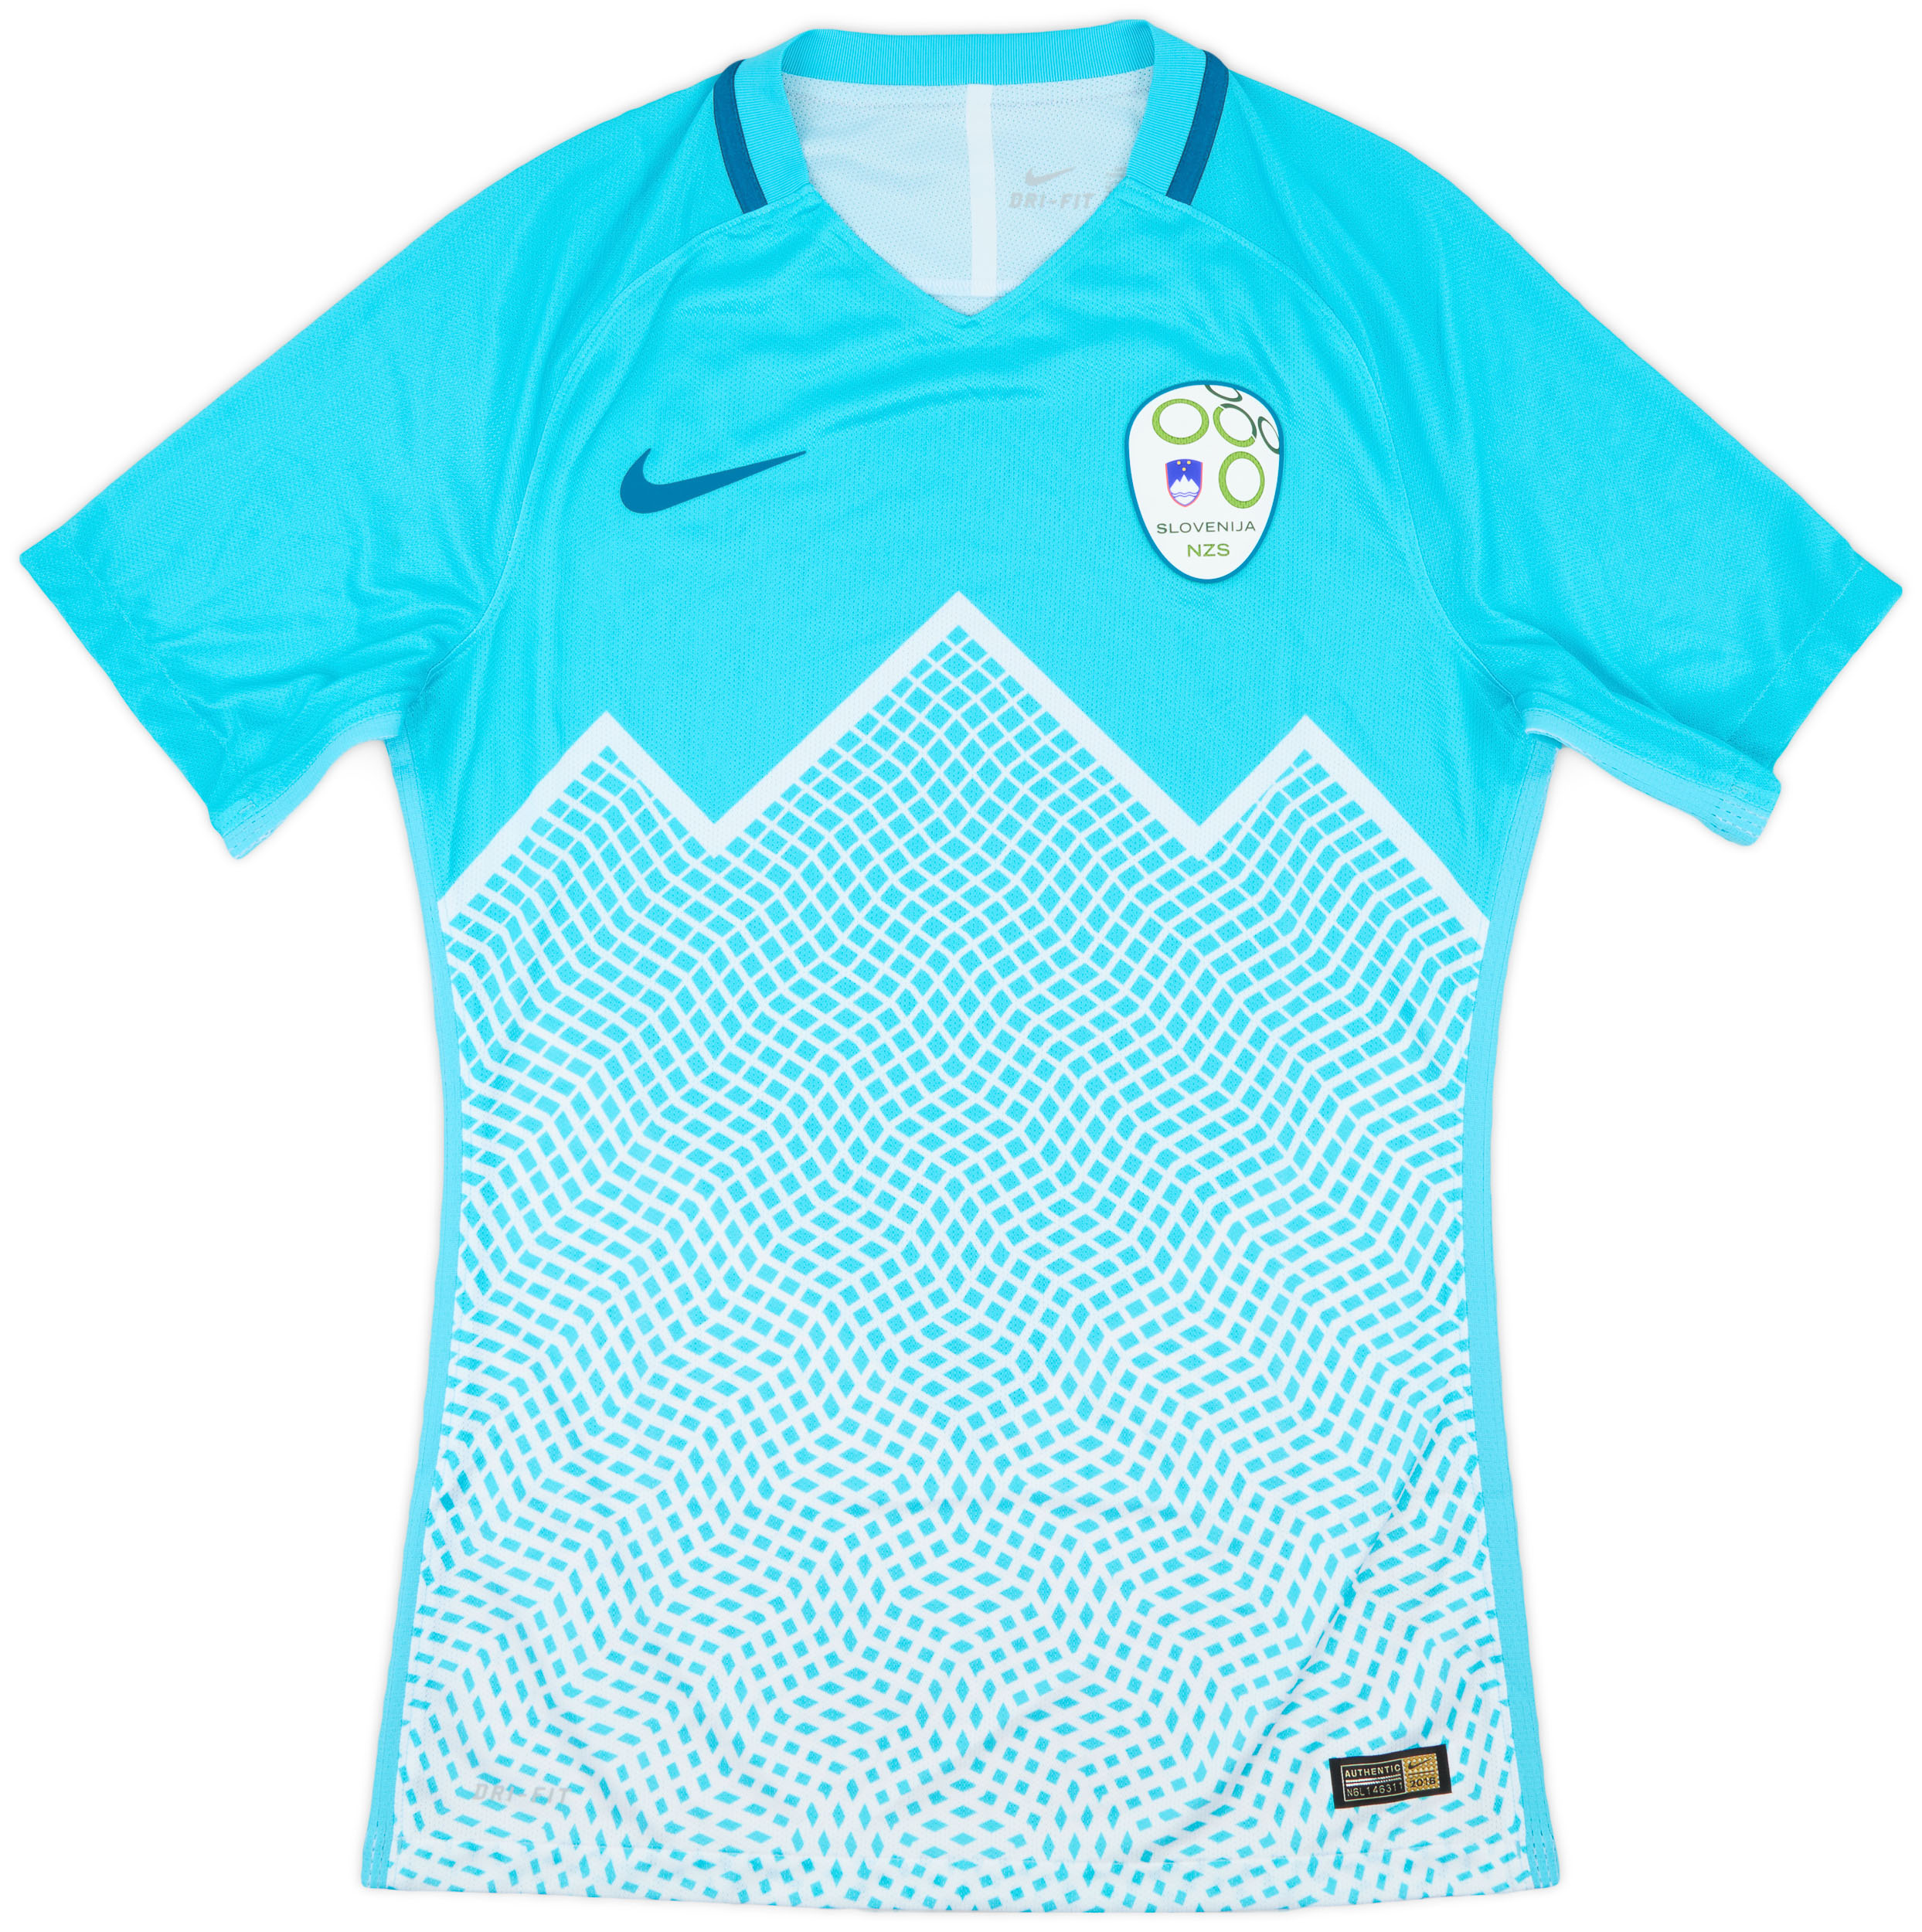 Retro Slovenia Shirt